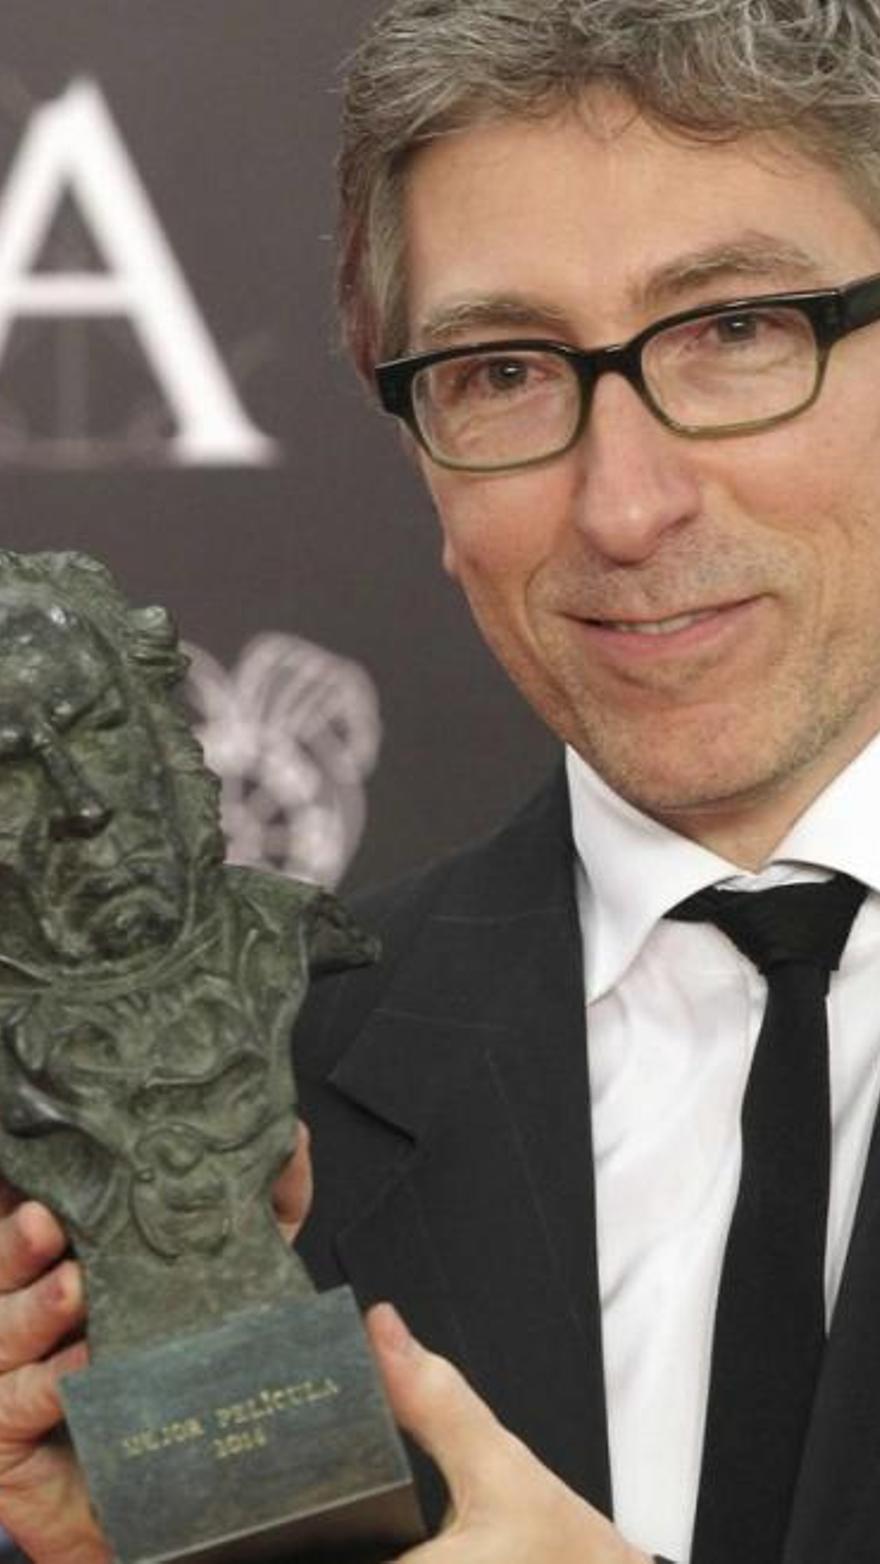 La escultura de los Premios Goya – Fundación Mariano Benlliure